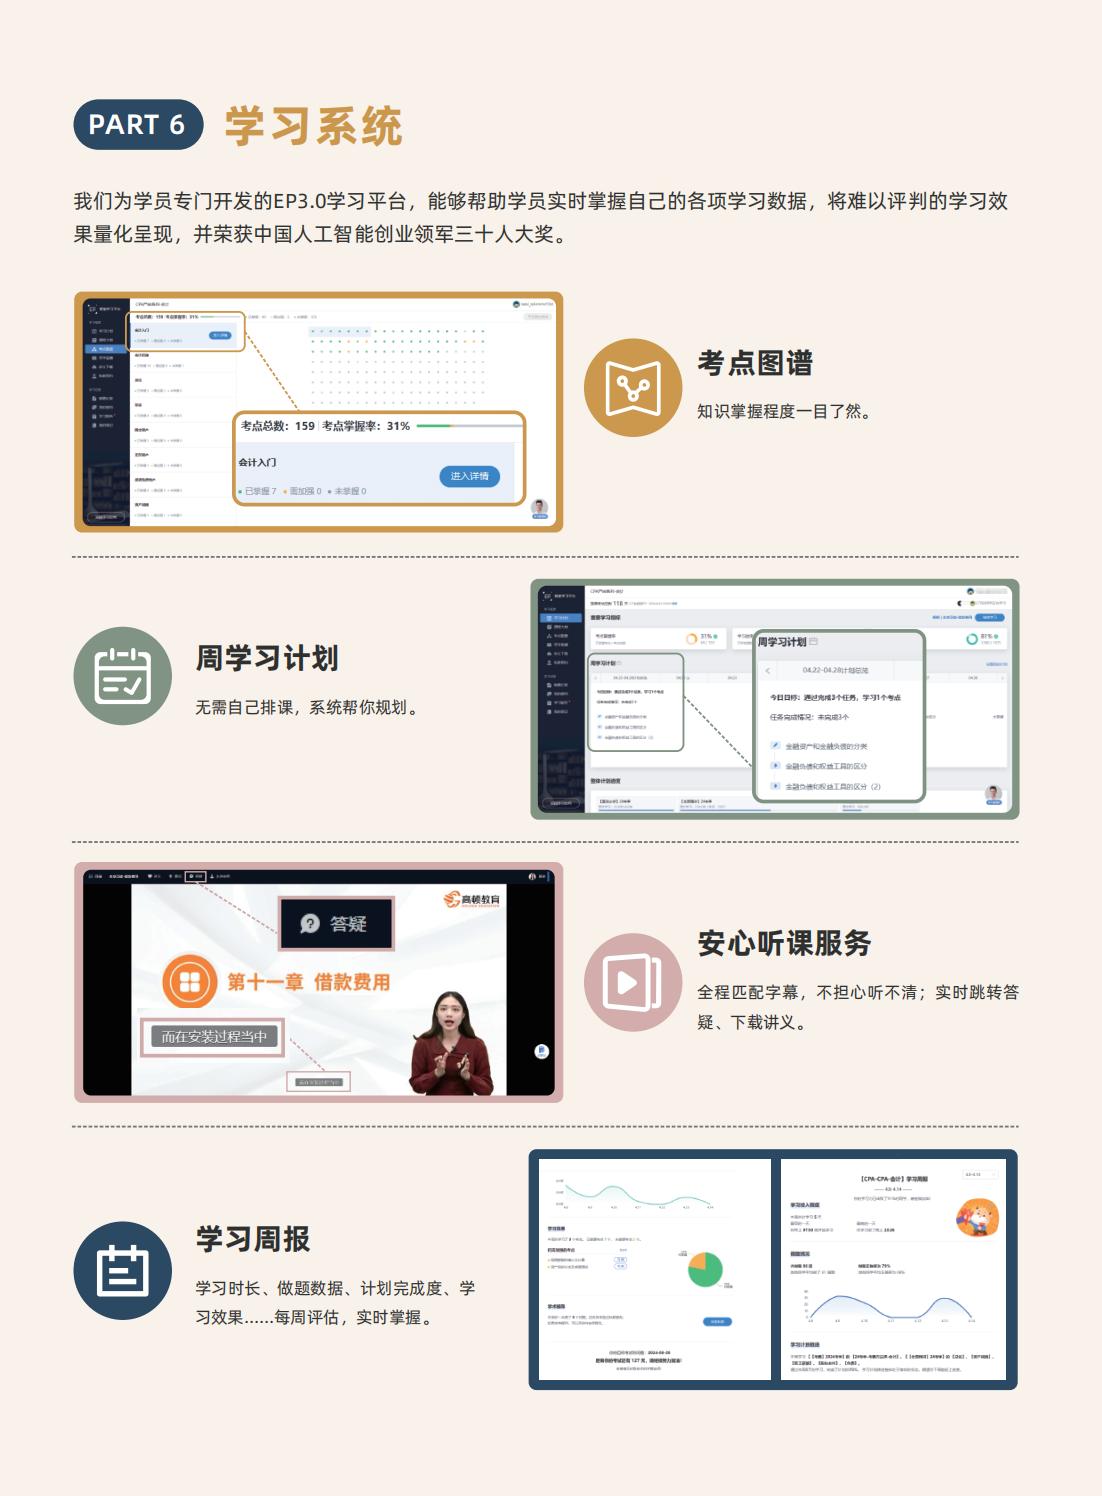 https://simg01.gaodunwangxiao.com/uploadfiles/product-center/202405/11/66d87_20240511101338.jpg